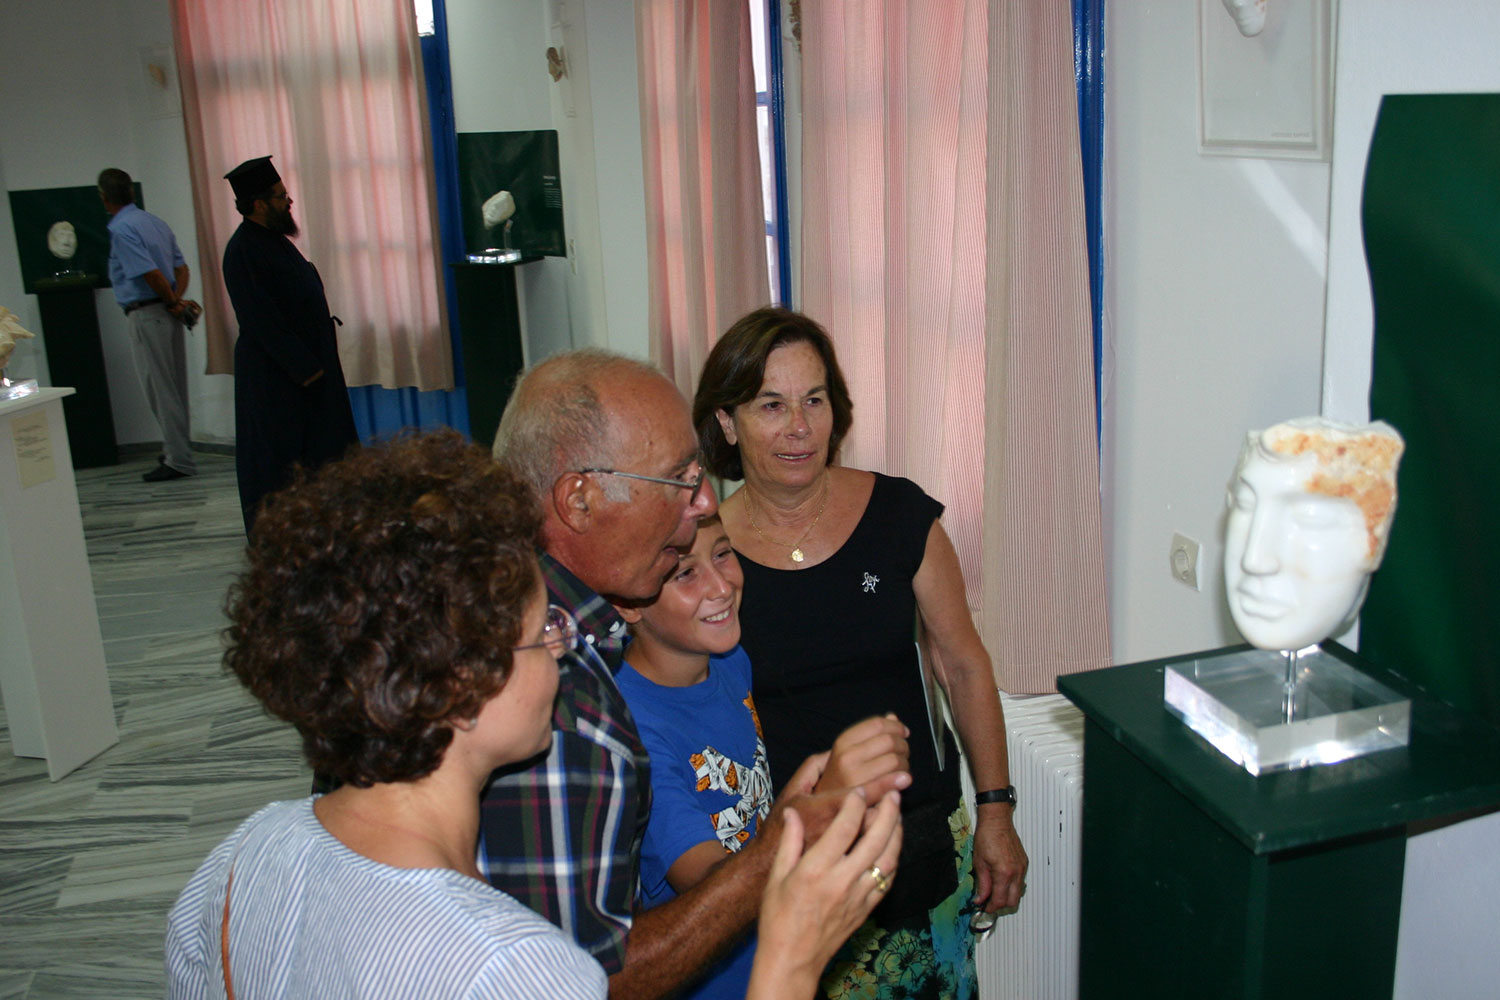 Antiparos 2010 - Exhibition -'Fones, Peglides ΙΙ and Ryades ΙΙ'